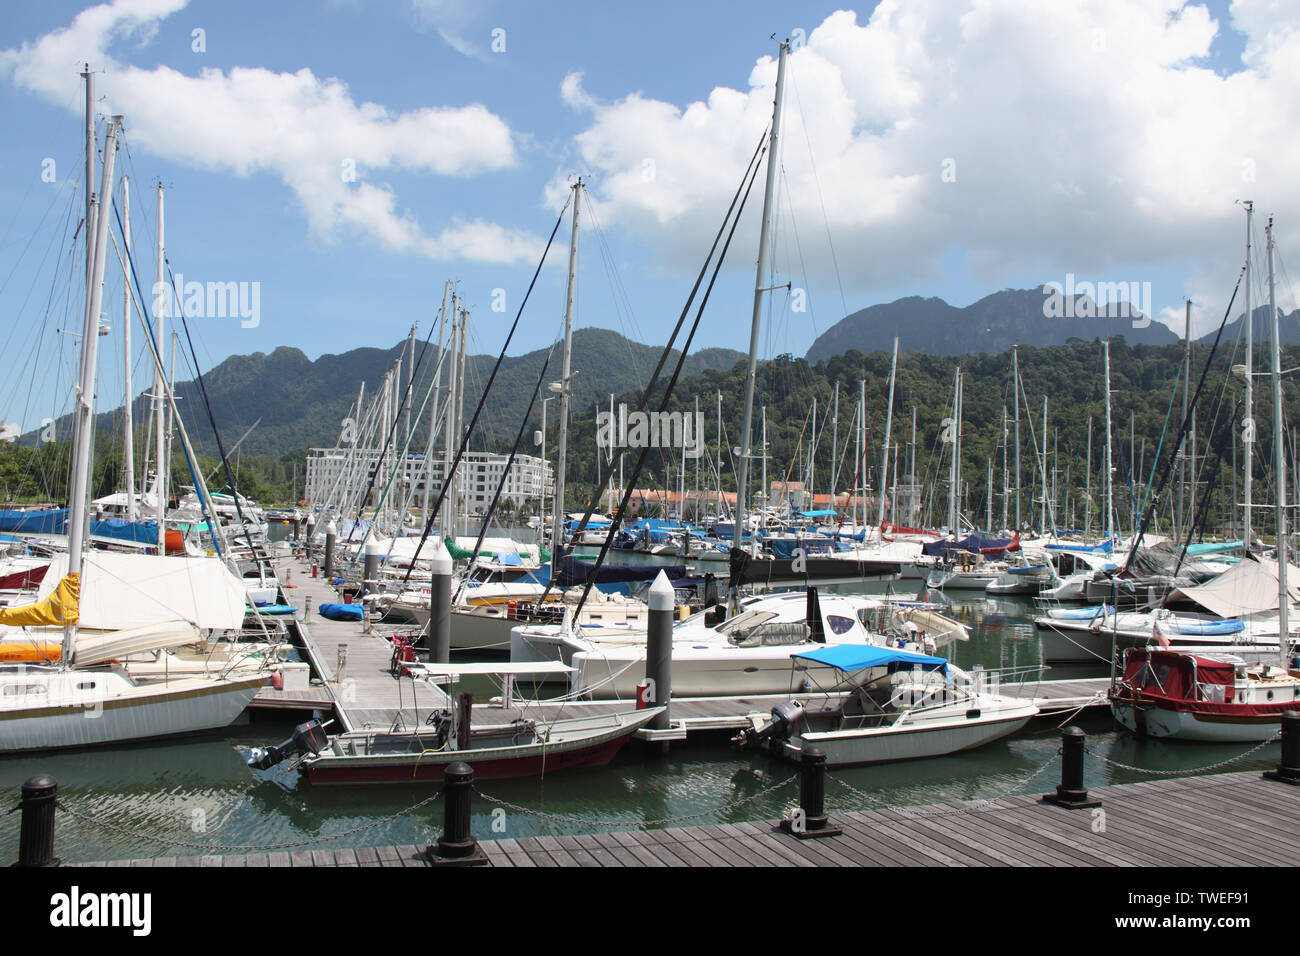 Yachts amarrés à un port, parc du port de Telaga, île de Langkawi, Malaisie Banque D'Images